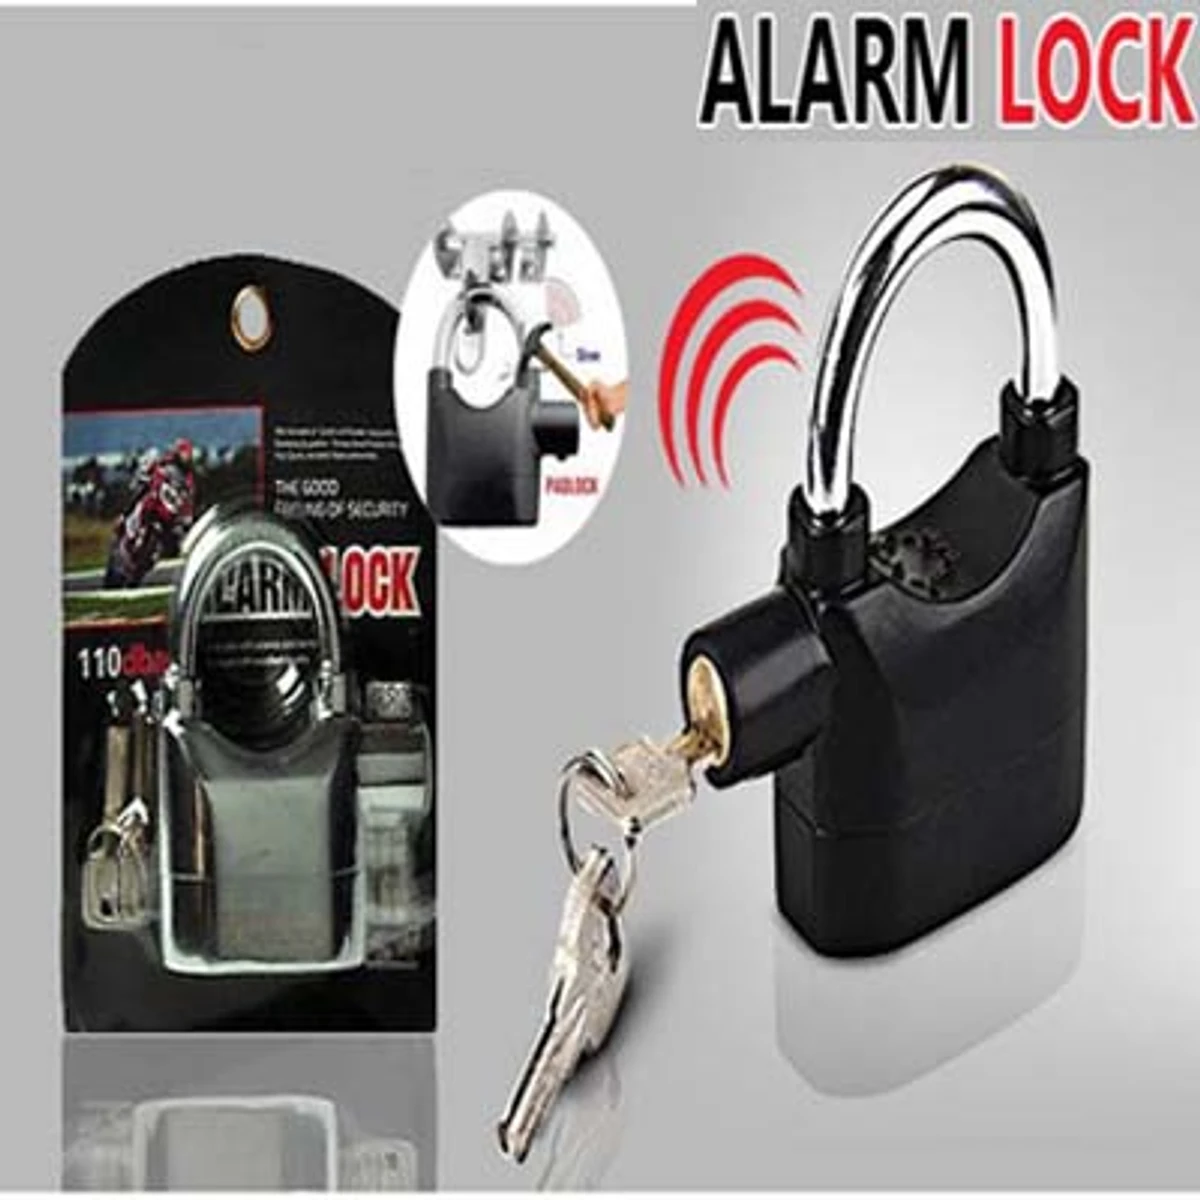 Security Alarm Lock (2 pcs)